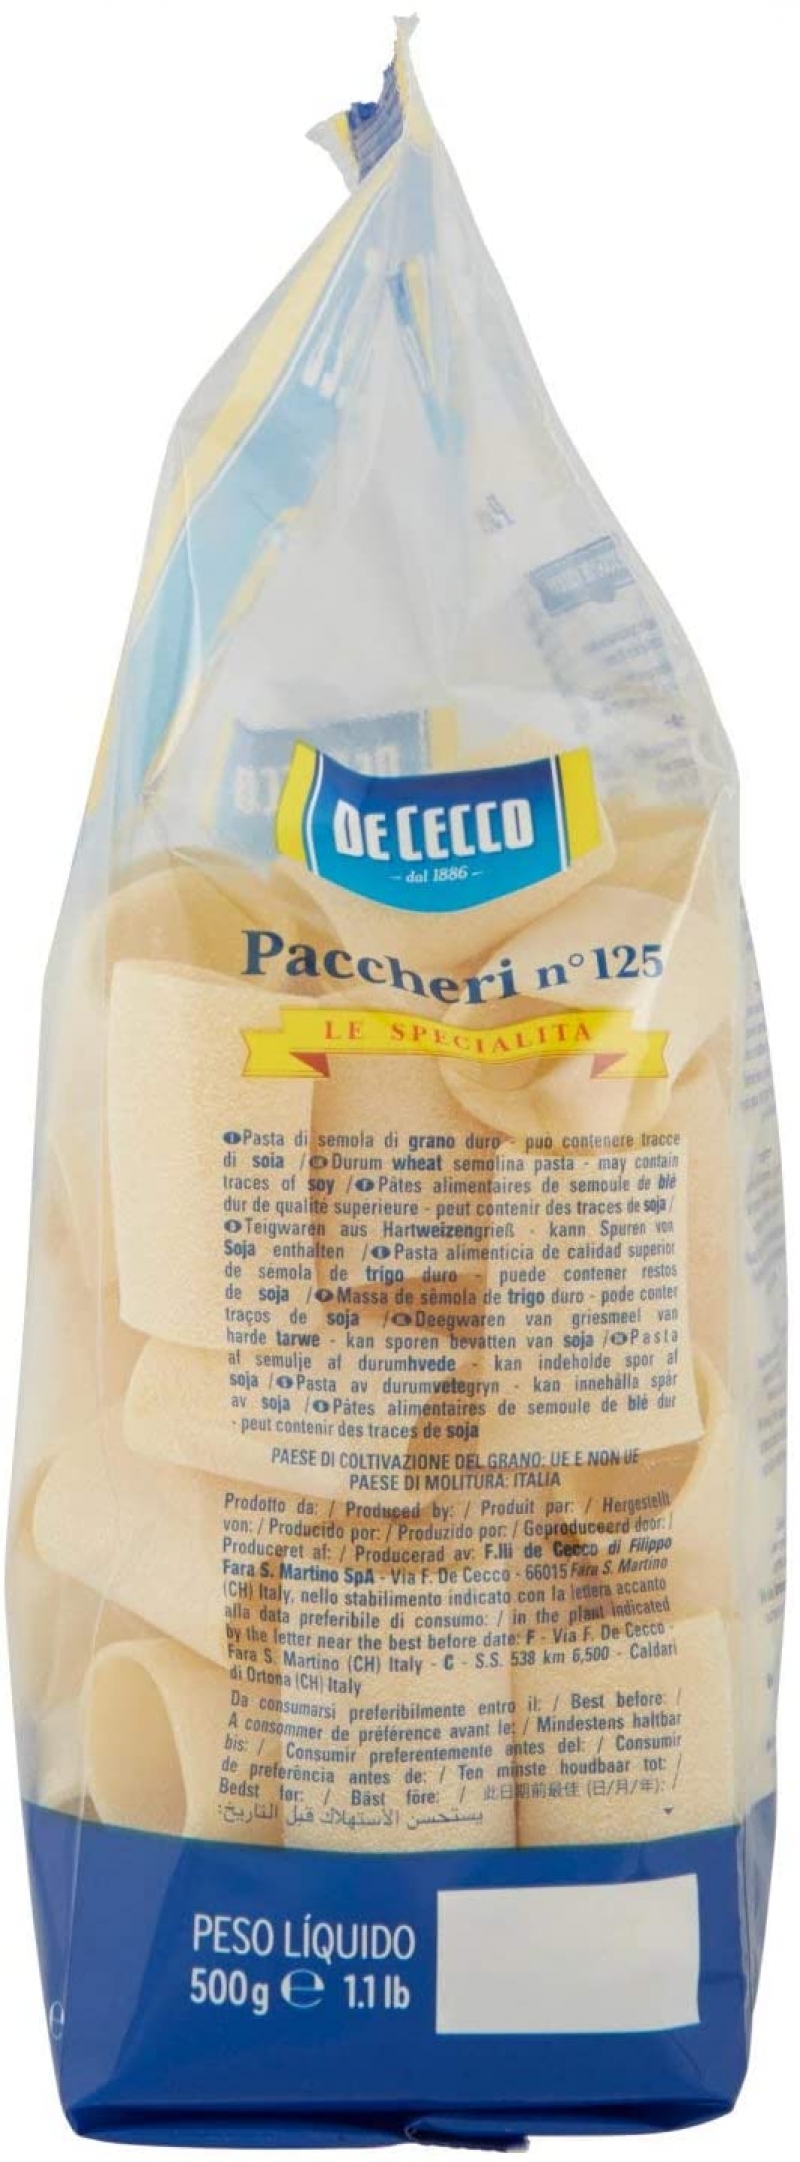 De Cecco Paccheri n. 125, 500G – Italian Gourmet FR